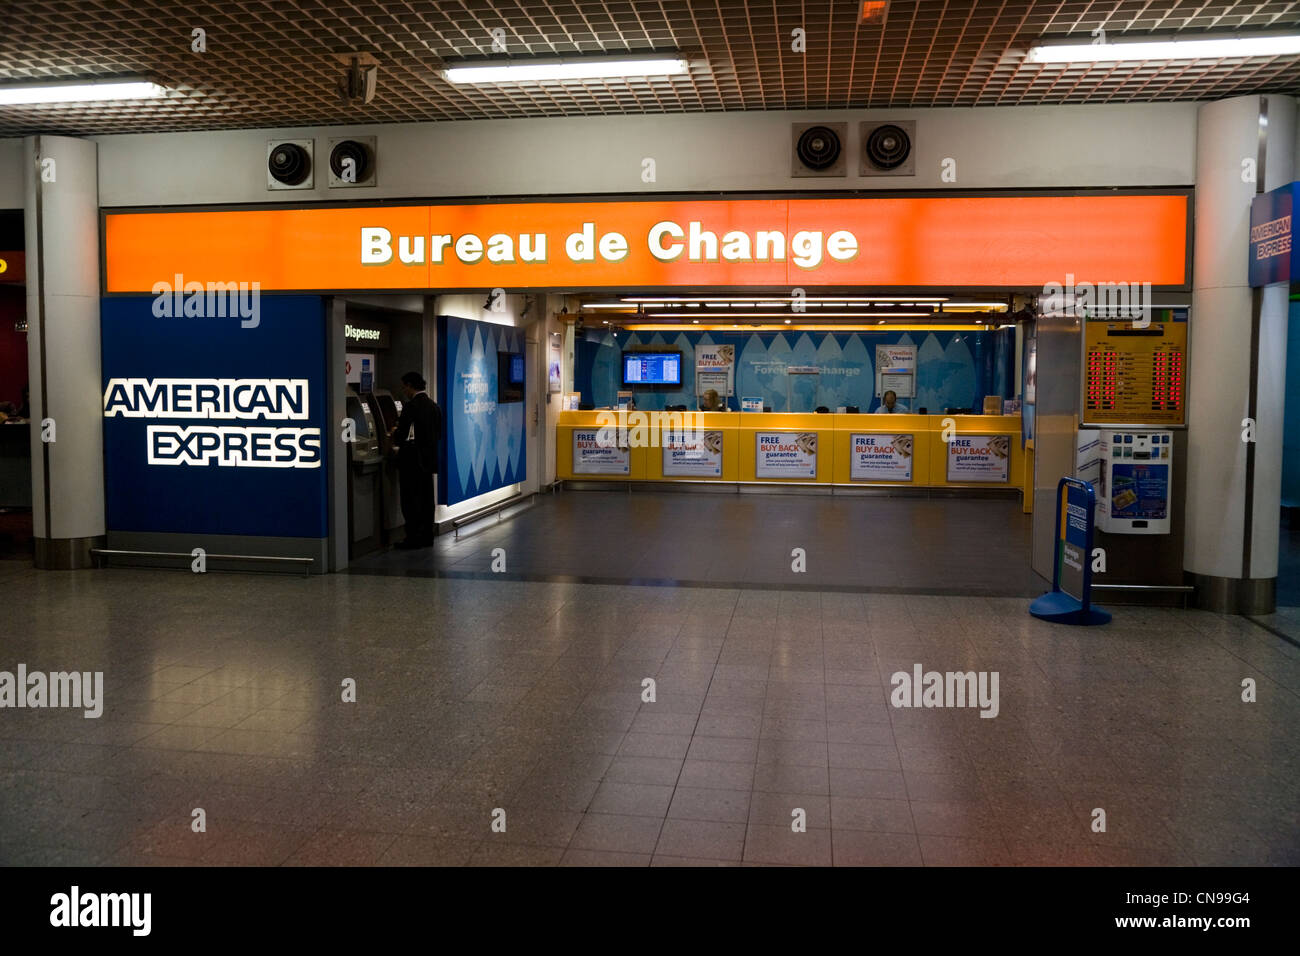 Bureau de Change Office operati da American Express presso l'aeroporto di Heathrow, terminale 3 / 3. Londra. Regno Unito. Foto Stock